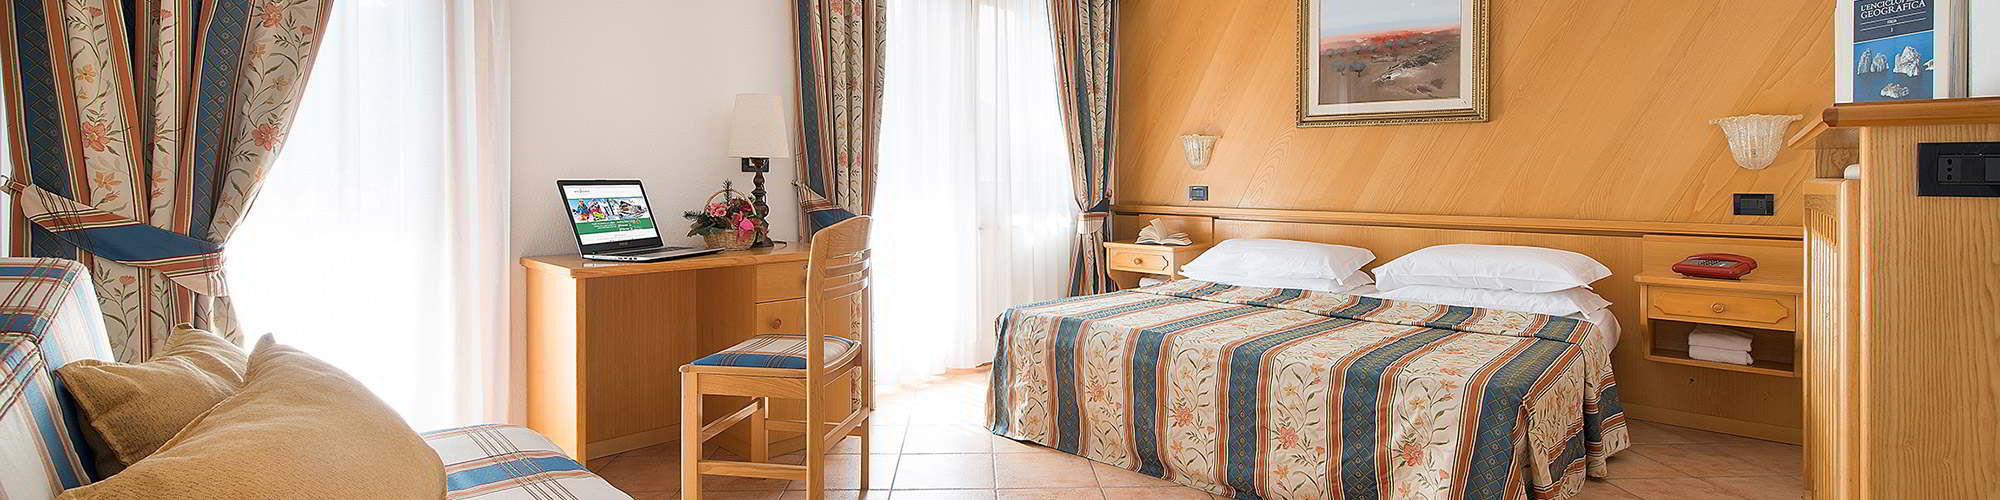 Hotel Bucaneve - Via SS 301 N.194, Livigno 23041 - Room - Superior 6